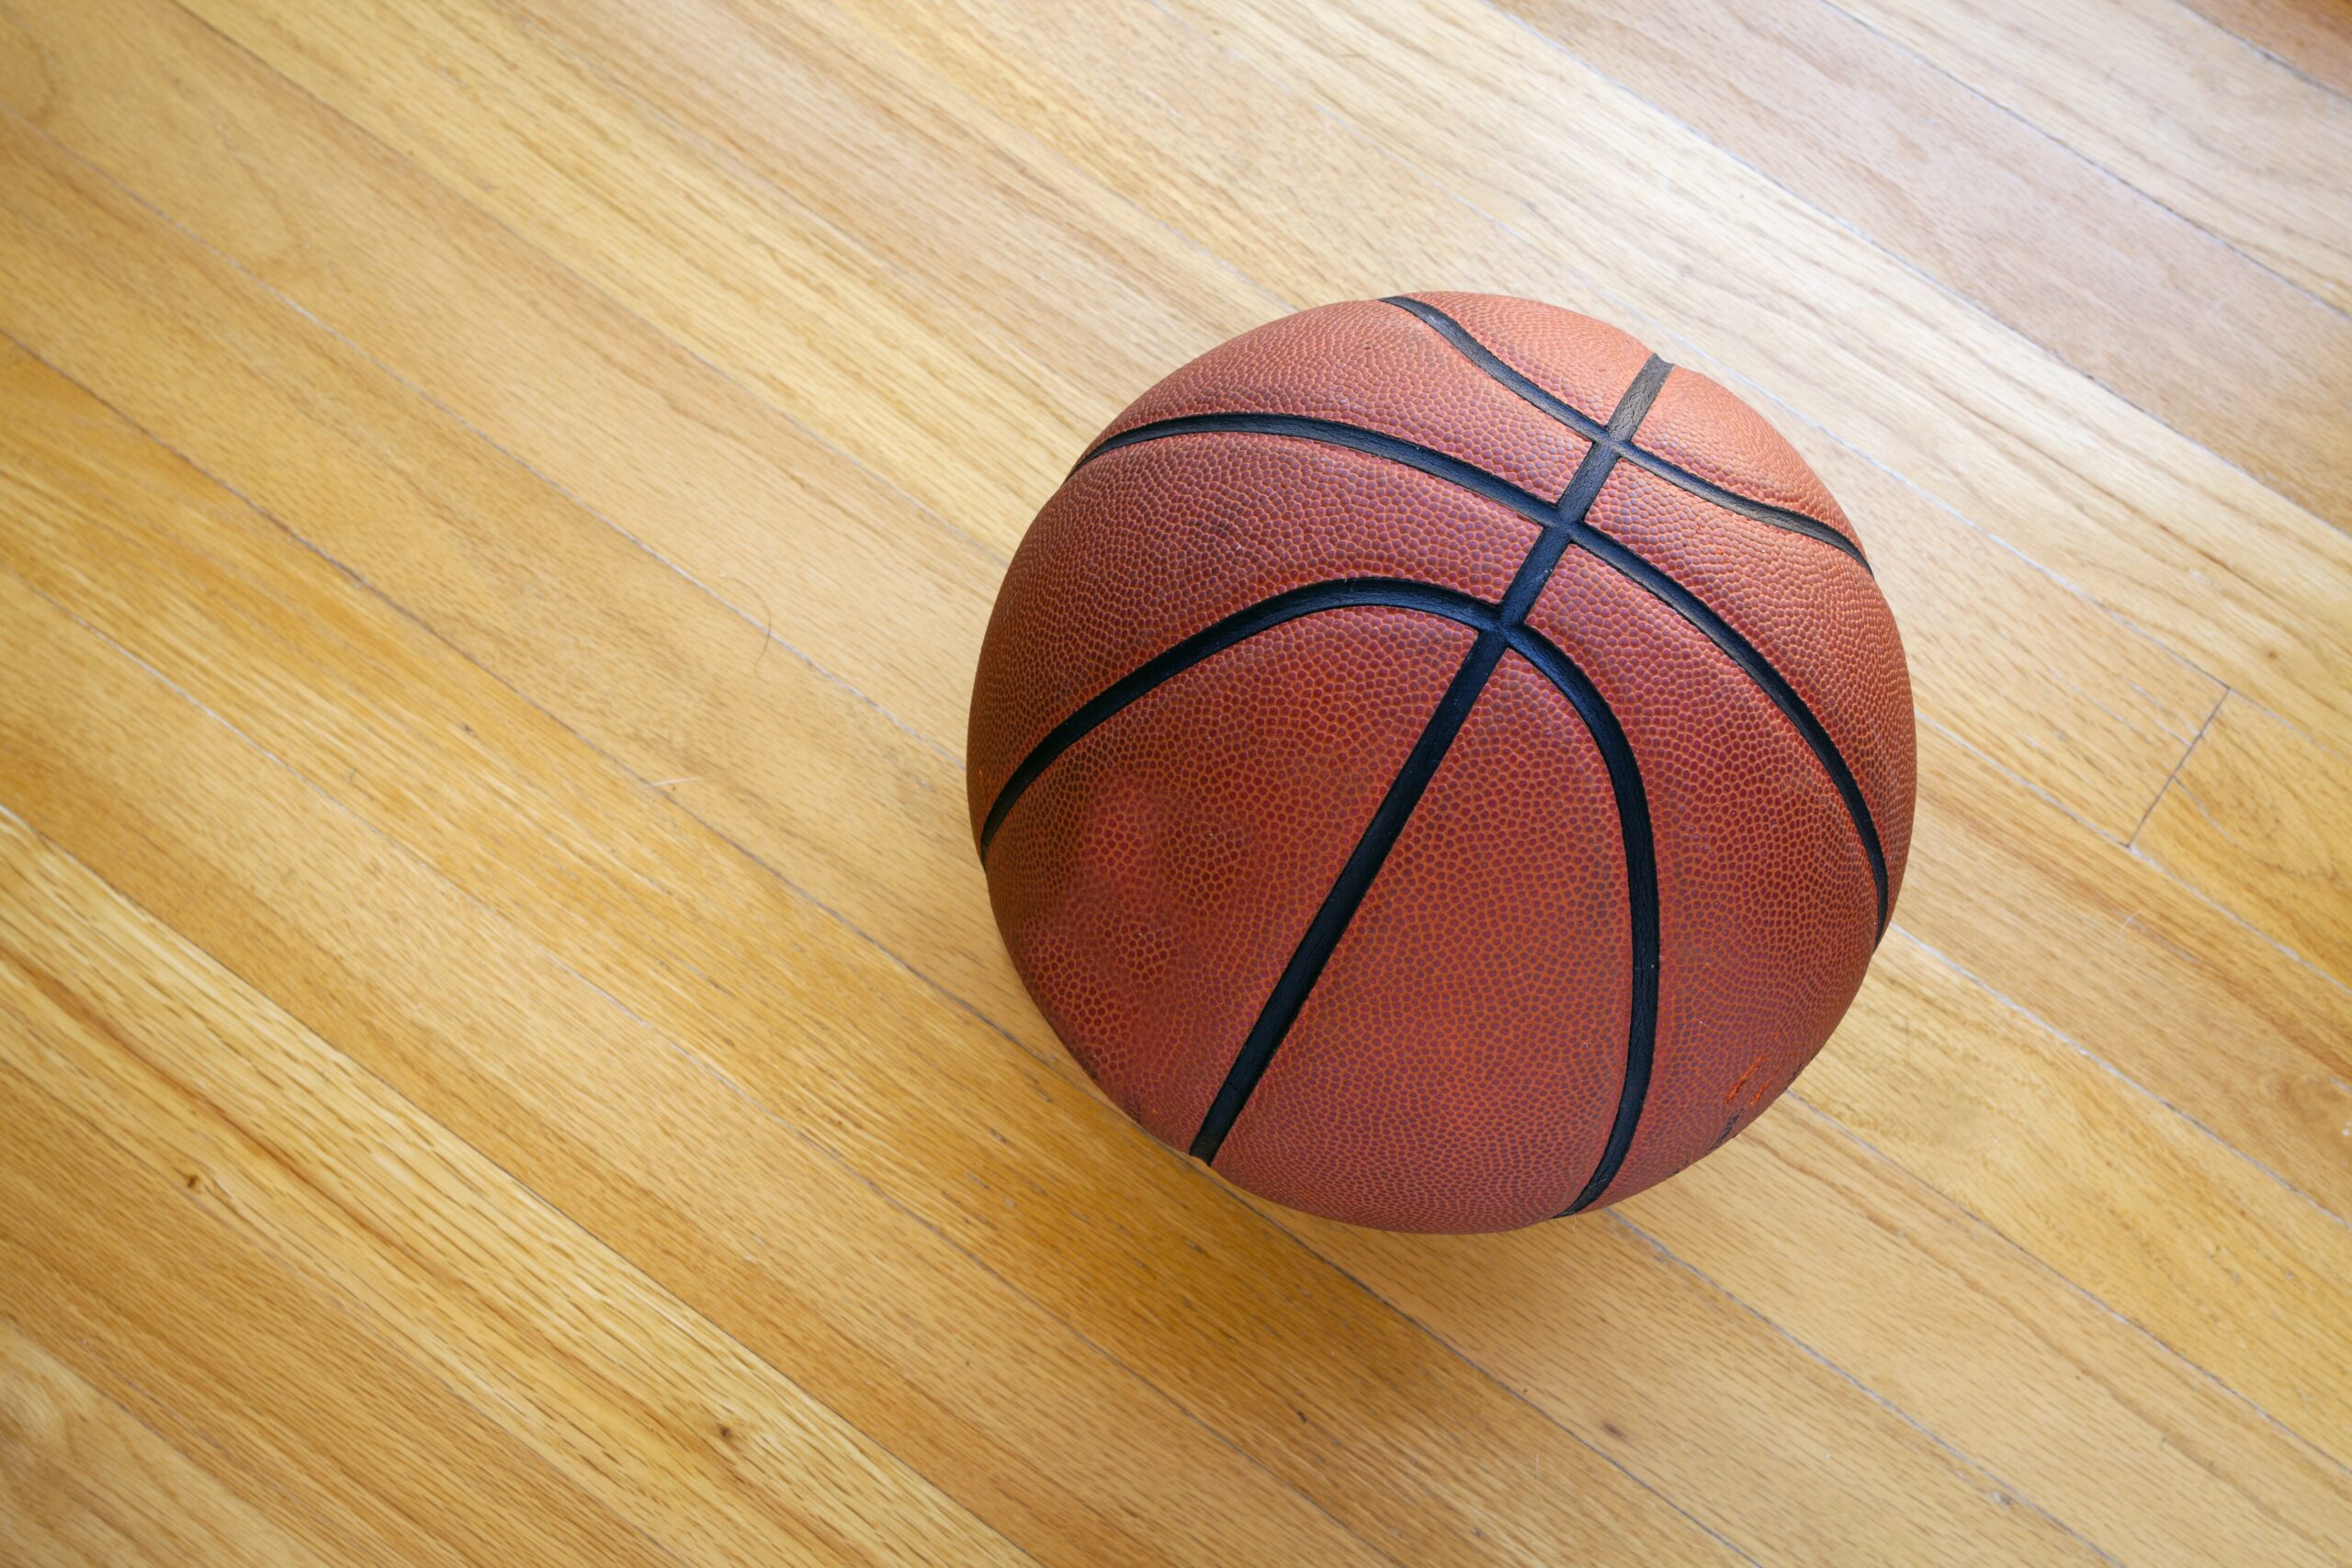 Basketball on hardwood